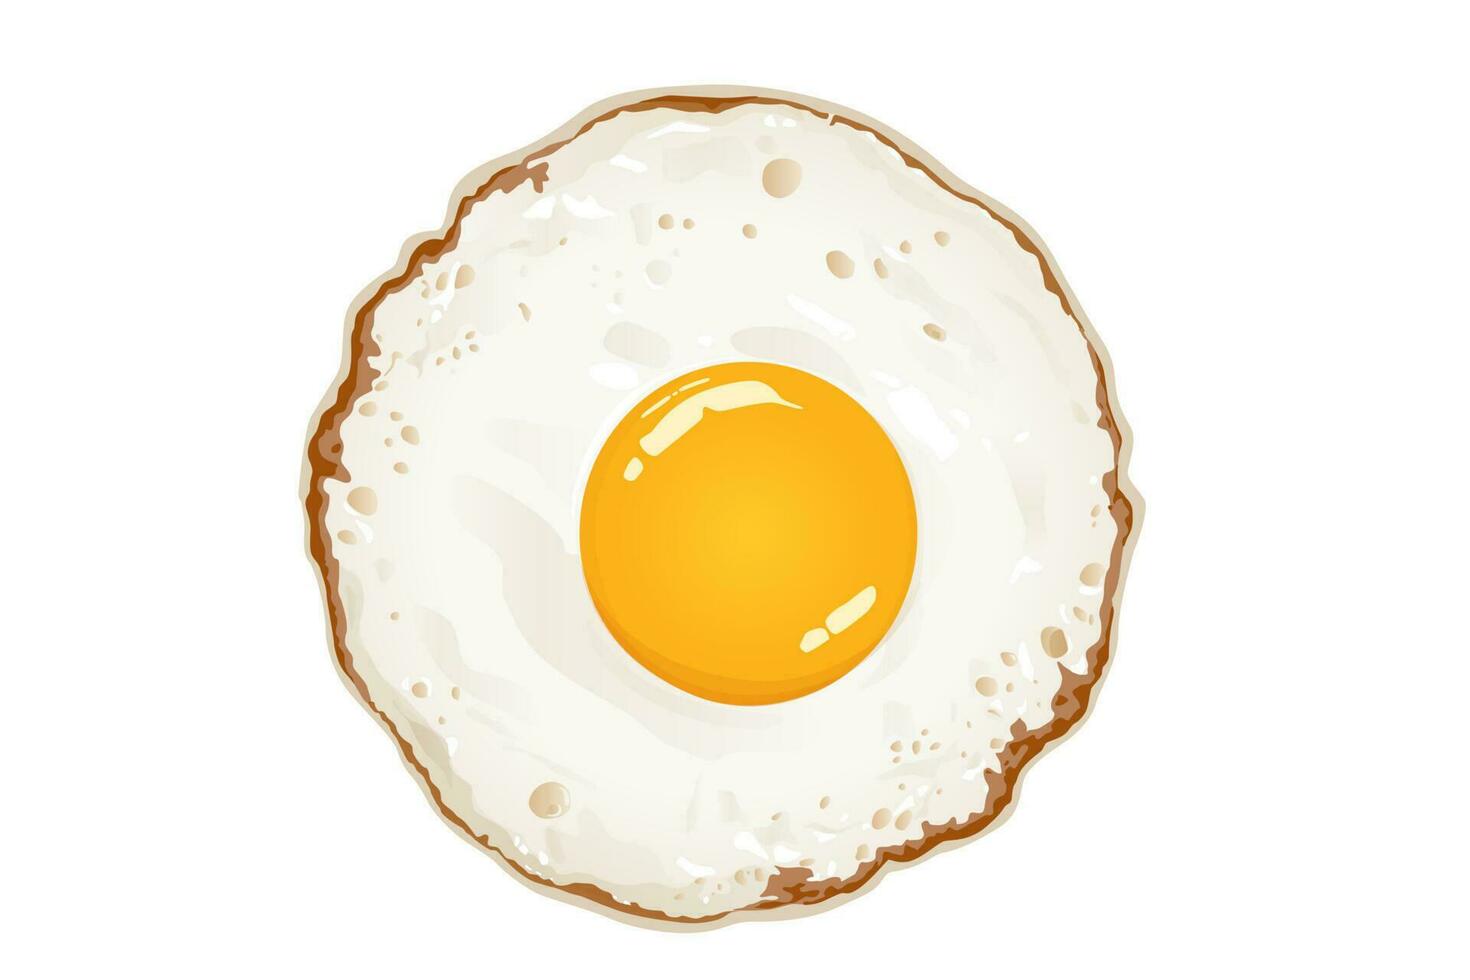 Fried egg on the white background, vector illustration.